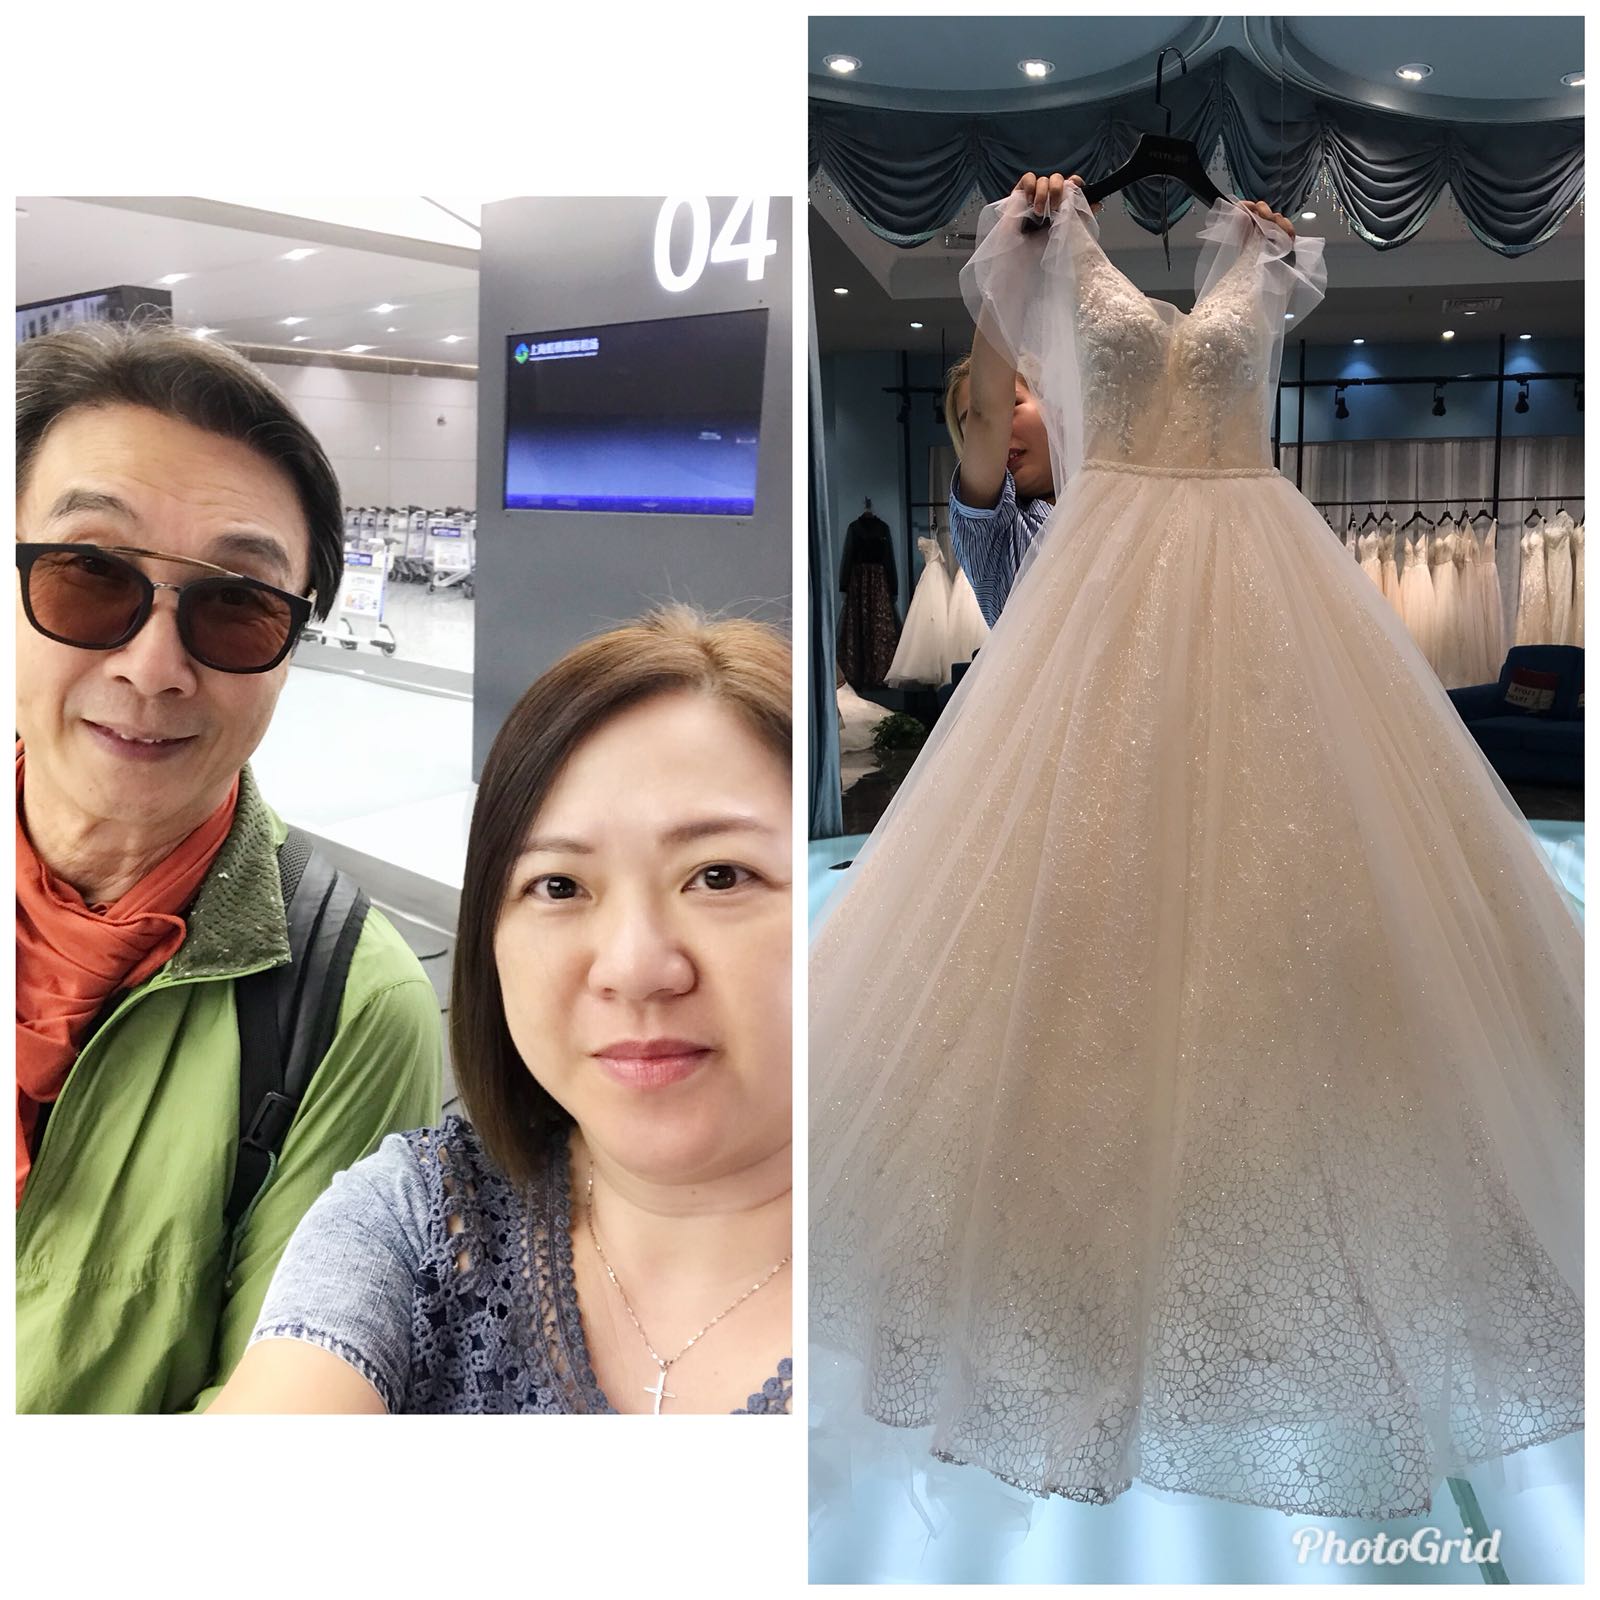 Queeny Ng婚禮統籌師工作紀錄: 今次Trip 找婚紗